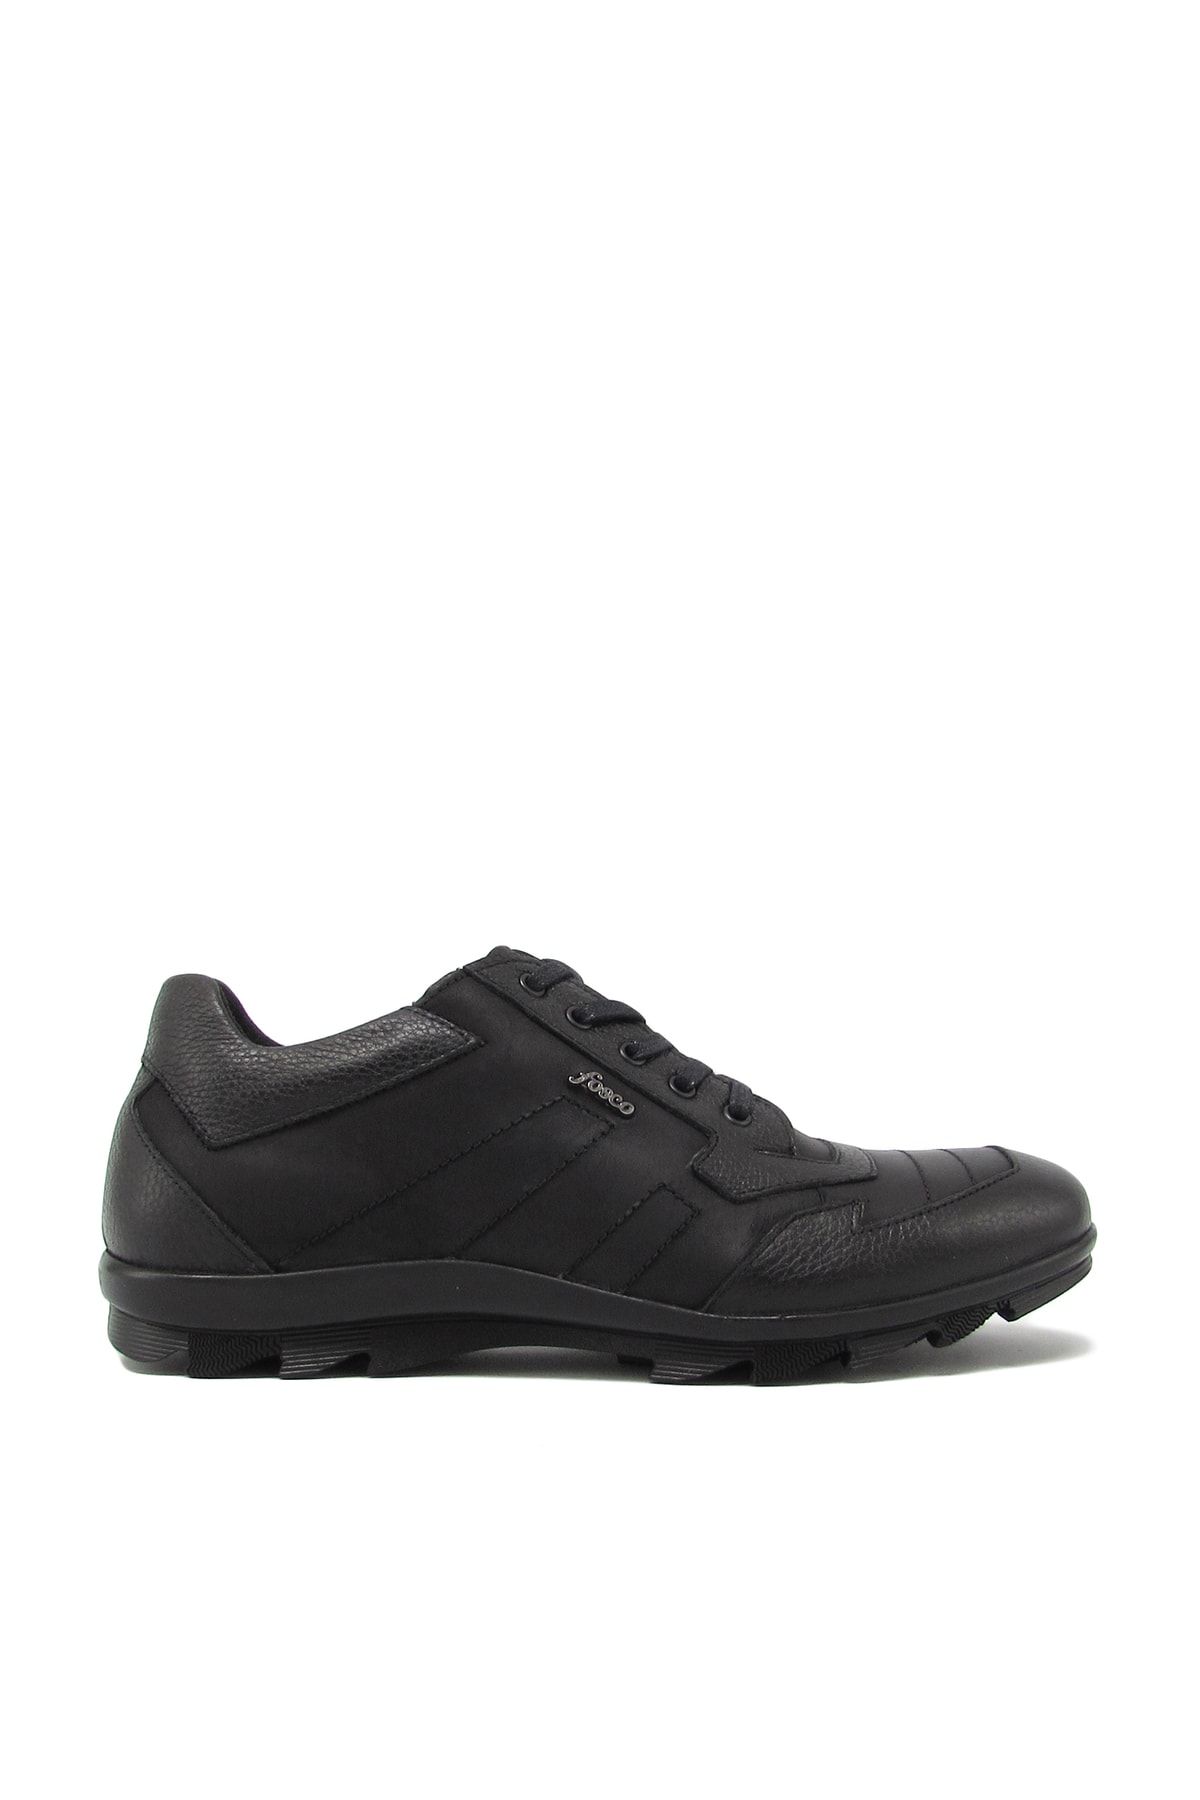 Fosco Fsc-7600 Siyah Nubuk Erkek Bağlı Spor Ayakkabı